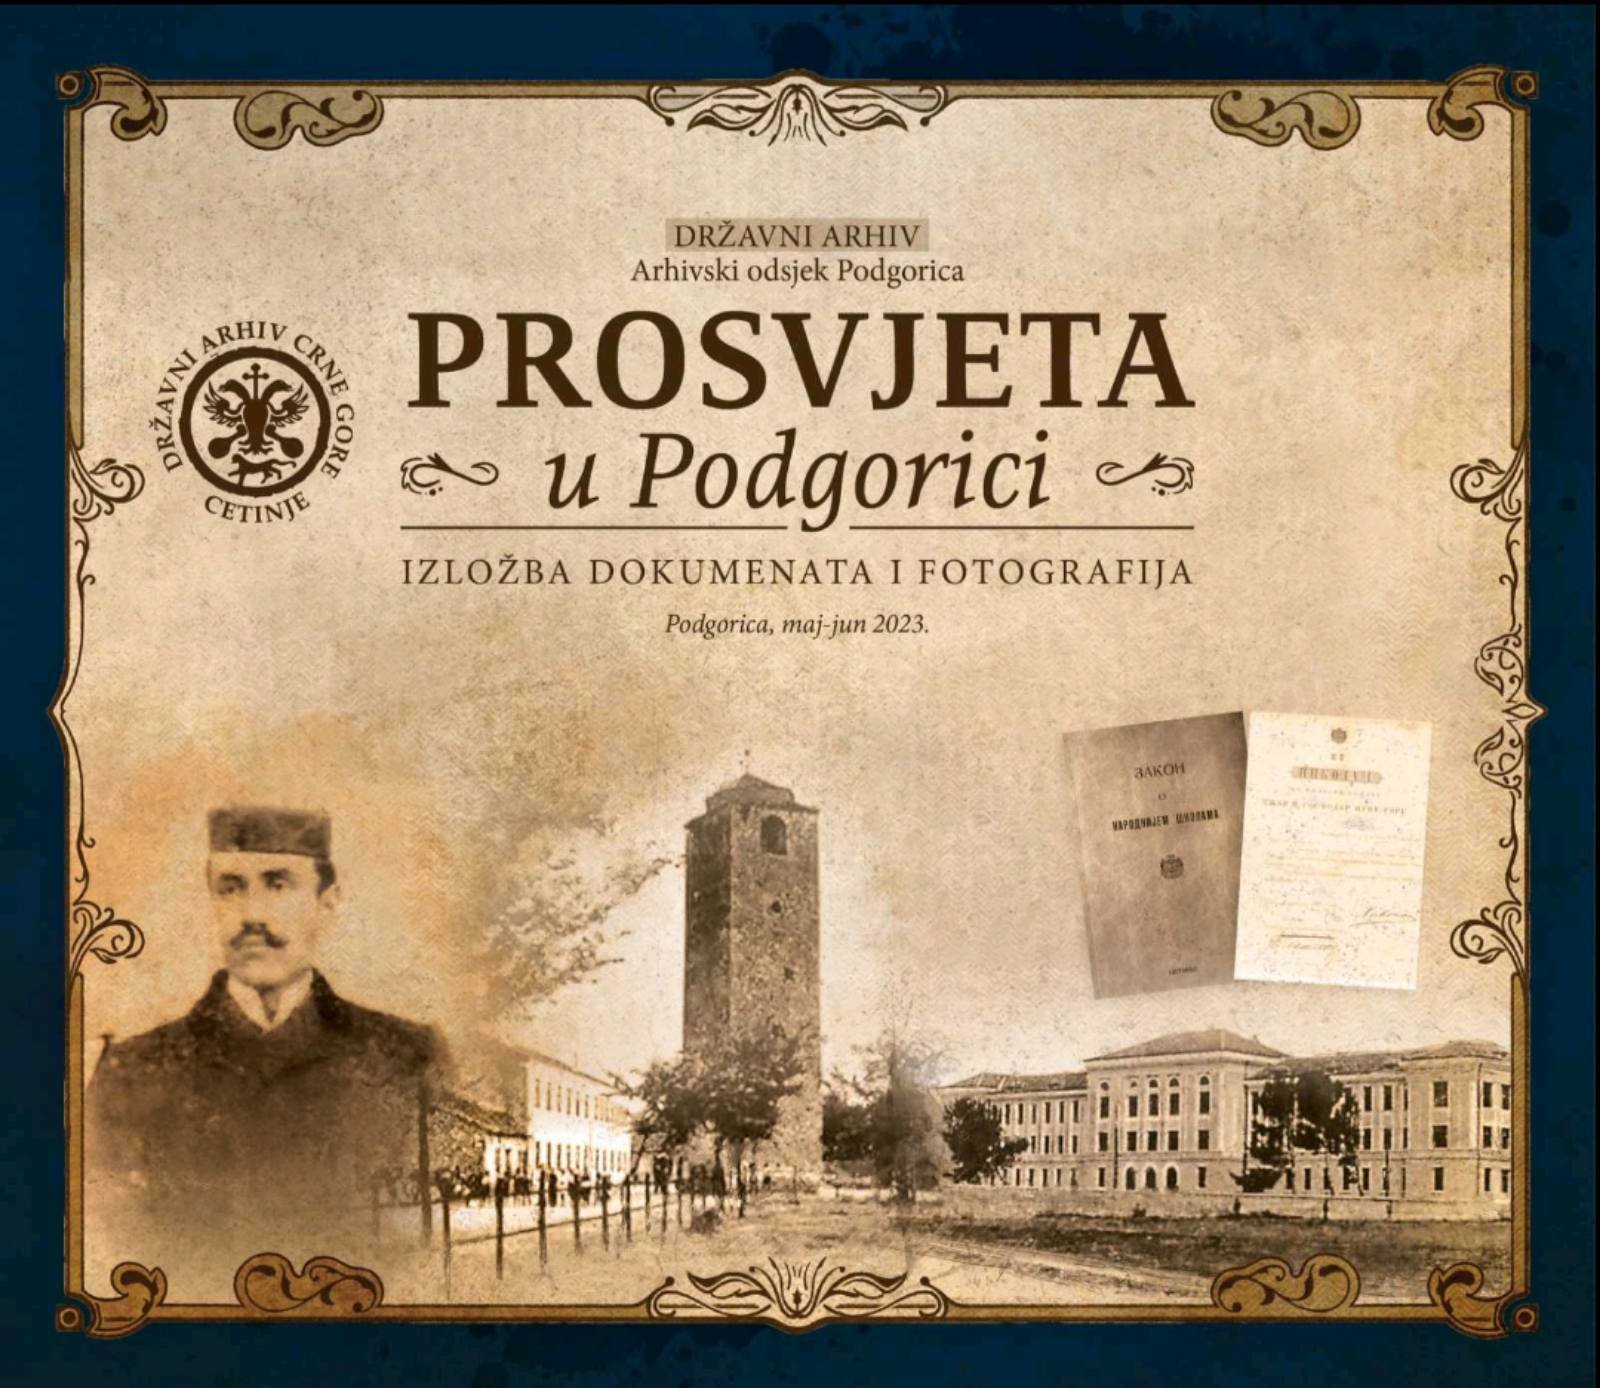 Izložba dokumenata i fotografija “Prosvjeta u Podgorici”